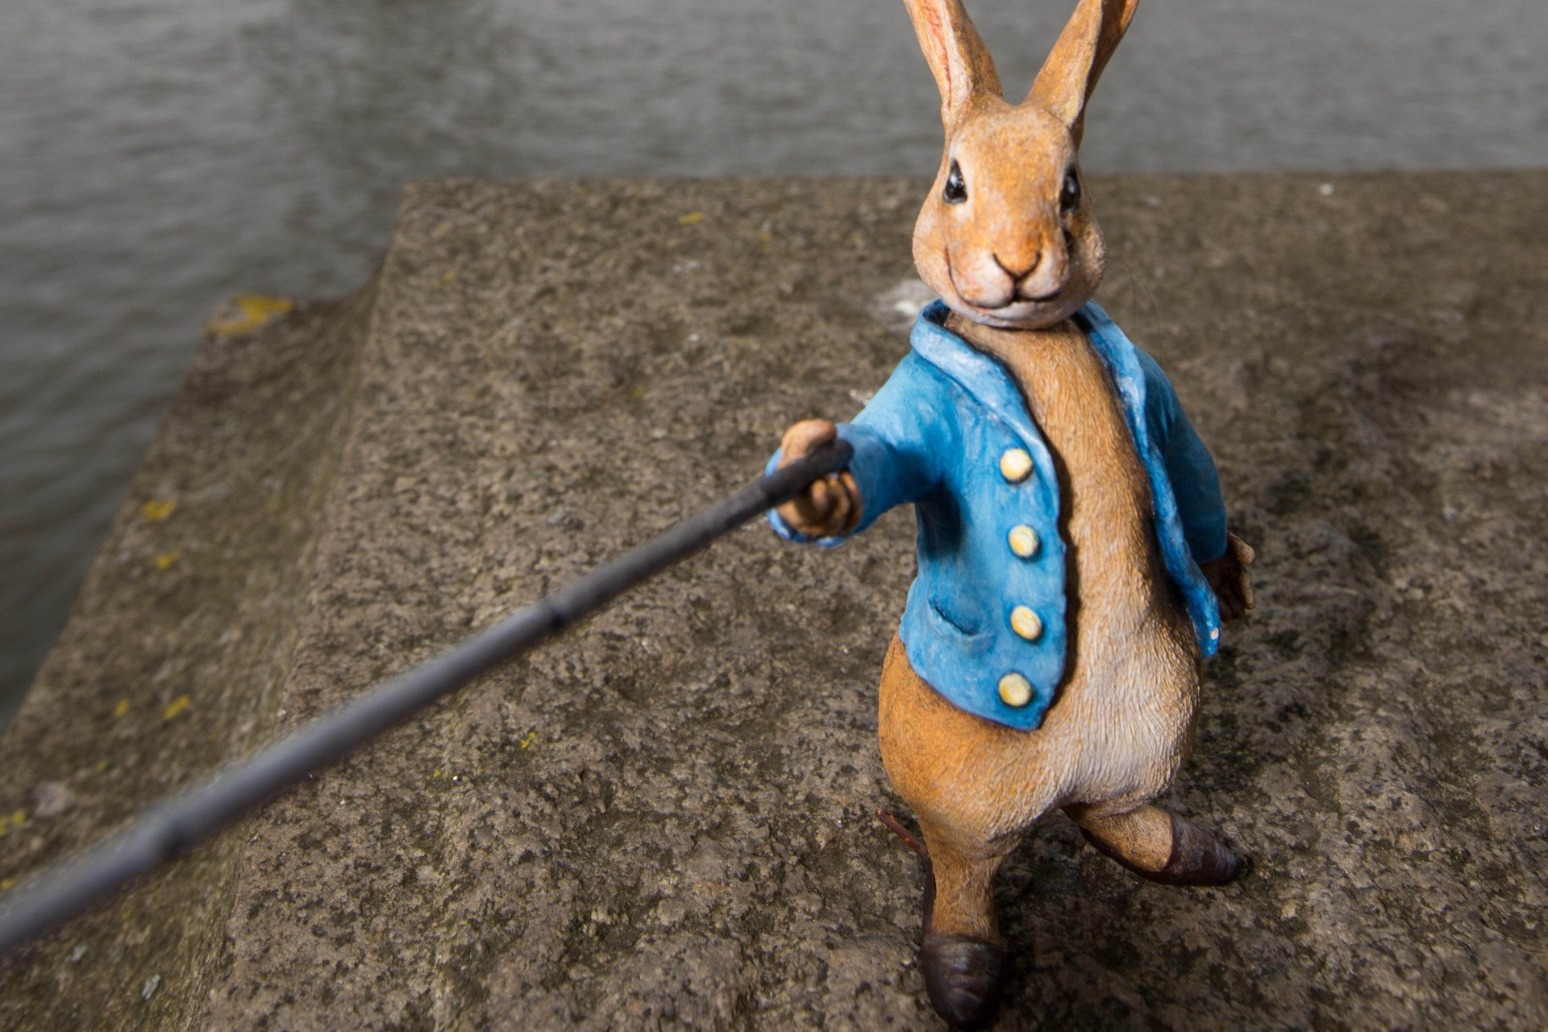 Beatrix Potters Peter Rabbit inspires garden initiative marking anniversary